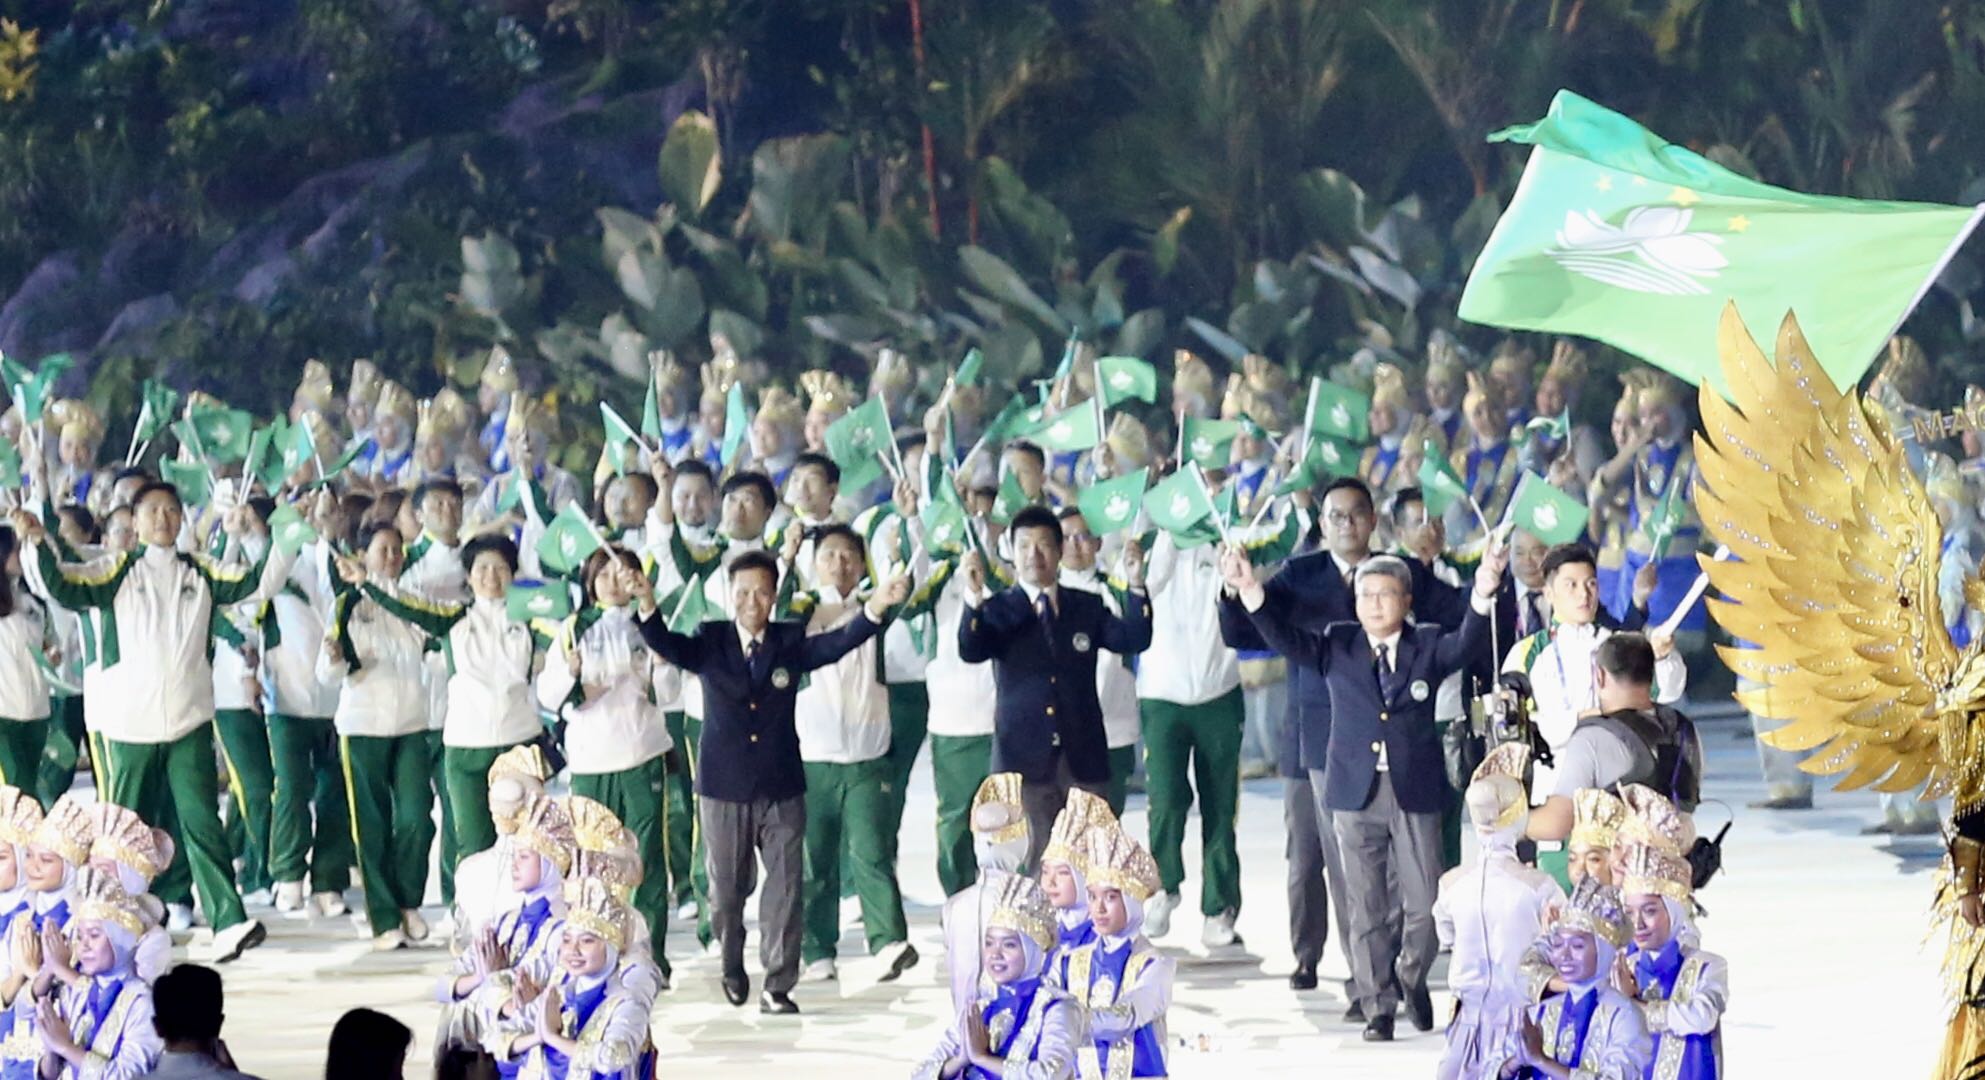 由團長潘永權及持旗手帶領下，中國澳門體育代表團步入場館進行開幕式